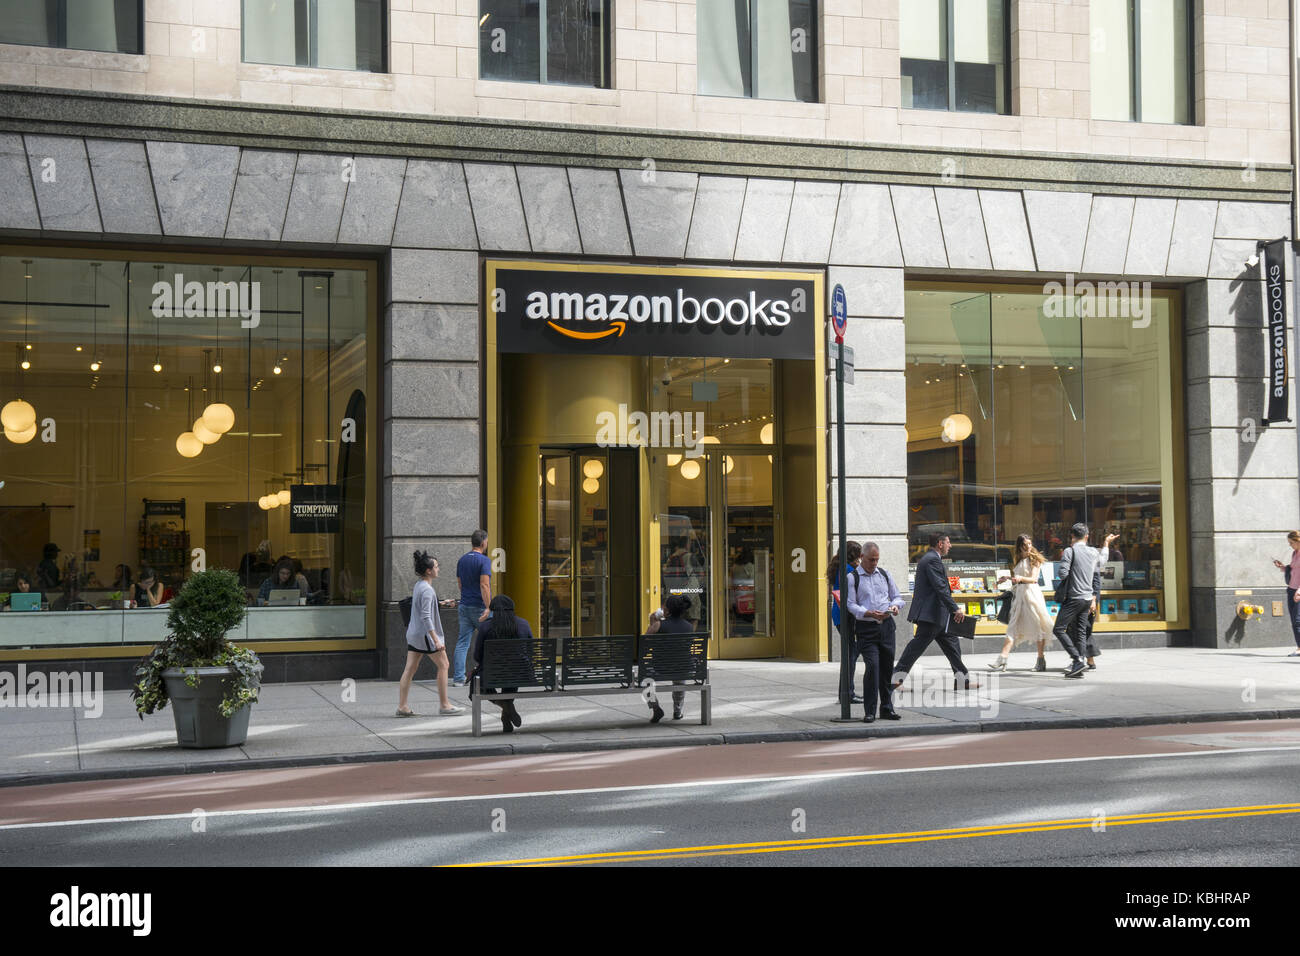 Uno de los nuevos "ladrillos y cemento" Amazon librerías que ha aparecido  en la 34th Street, justo al oeste de la quinta avenida en midtown  Manhattan, en la ciudad de Nueva York